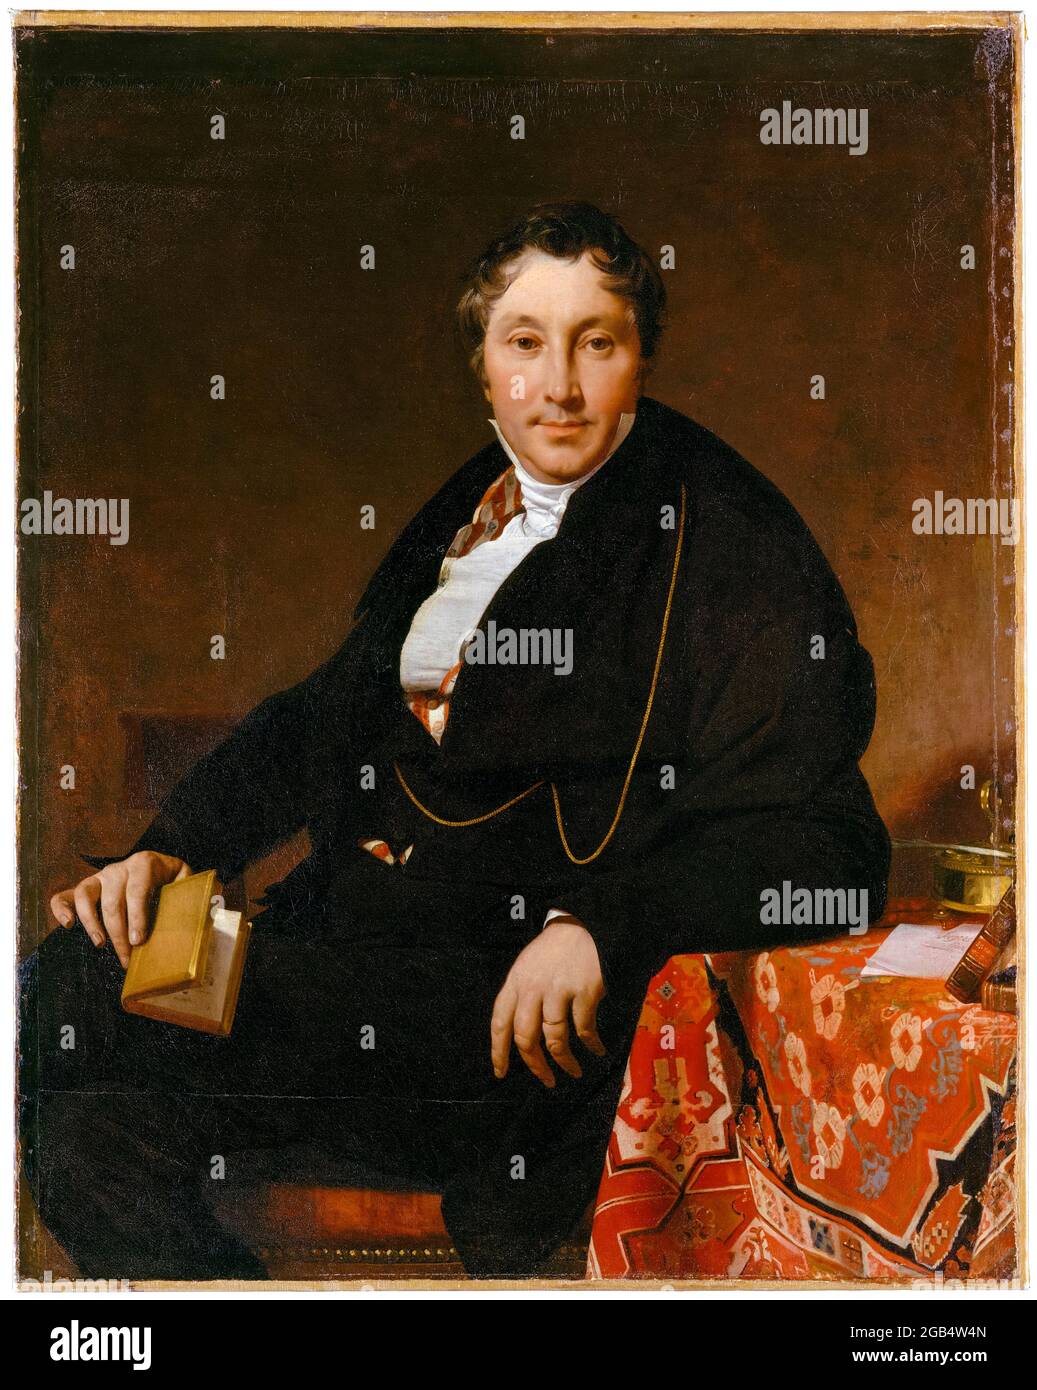 Jacques-Louis Leblanc (1774–1846), portrait painting by Jean Auguste Dominique Ingres, 1823 Stock Photo